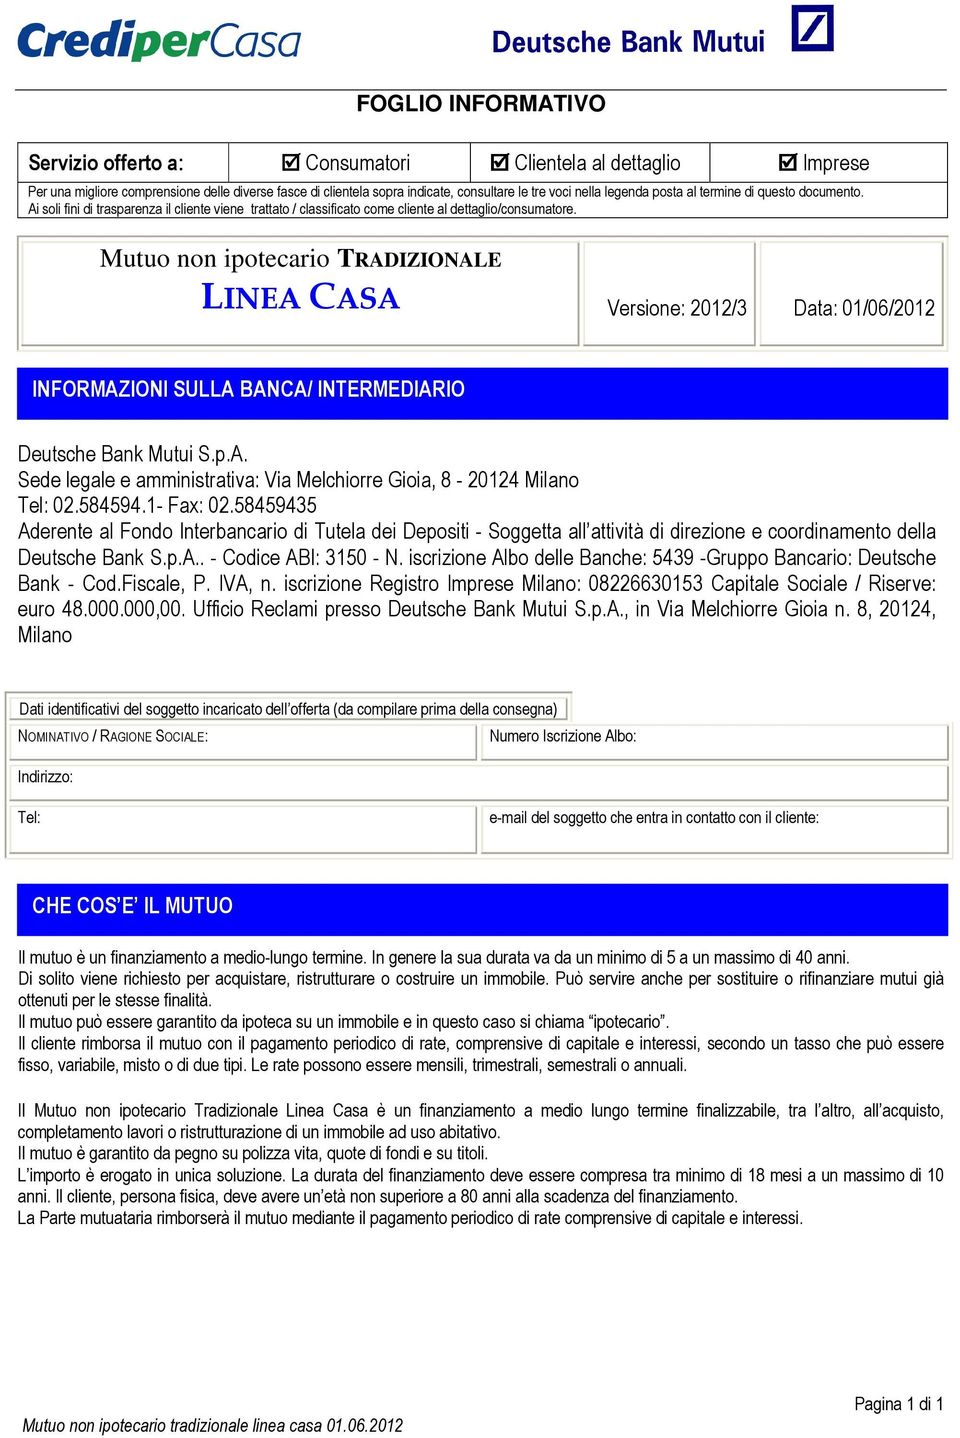 Mutuo non ipotecario TRADIZIONALE LINEA CASA Versione: 2012/3 Data: 01/06/2012 INFORMAZIONI SULLA BANCA/ INTERMEDIARIO Deutsche Bank Mutui S.p.A. Sede legale e amministrativa: Via Melchiorre Gioia, 8-20124 Milano Tel: 02.